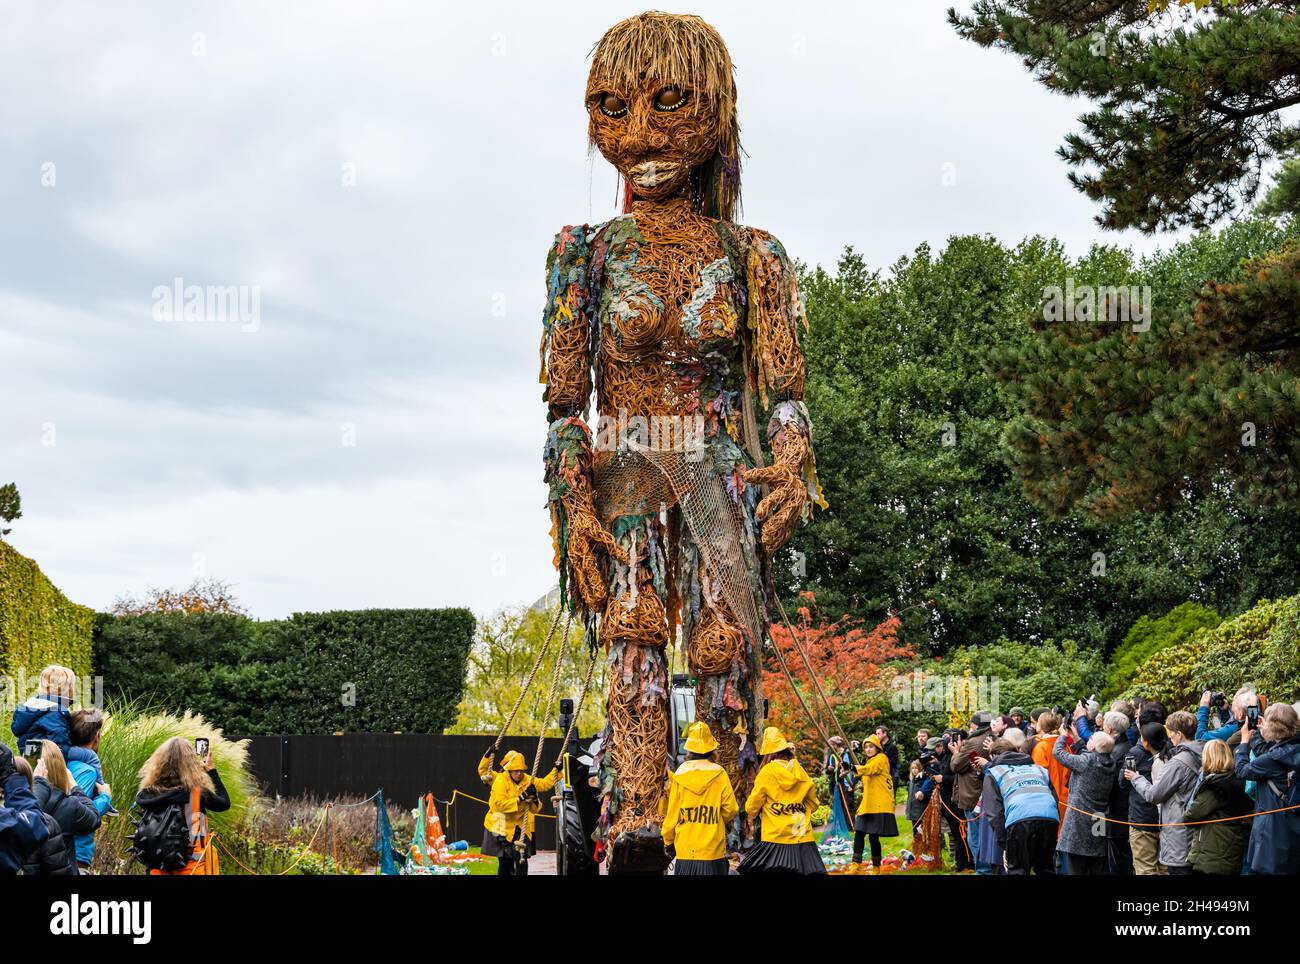 Des gens qui regardent l'événement théâtral Giant Puppet Storm, fait des matériaux recyclés de forme, au Royal Botanic Garden, Édimbourg, Écosse, Royaume-Uni Banque D'Images